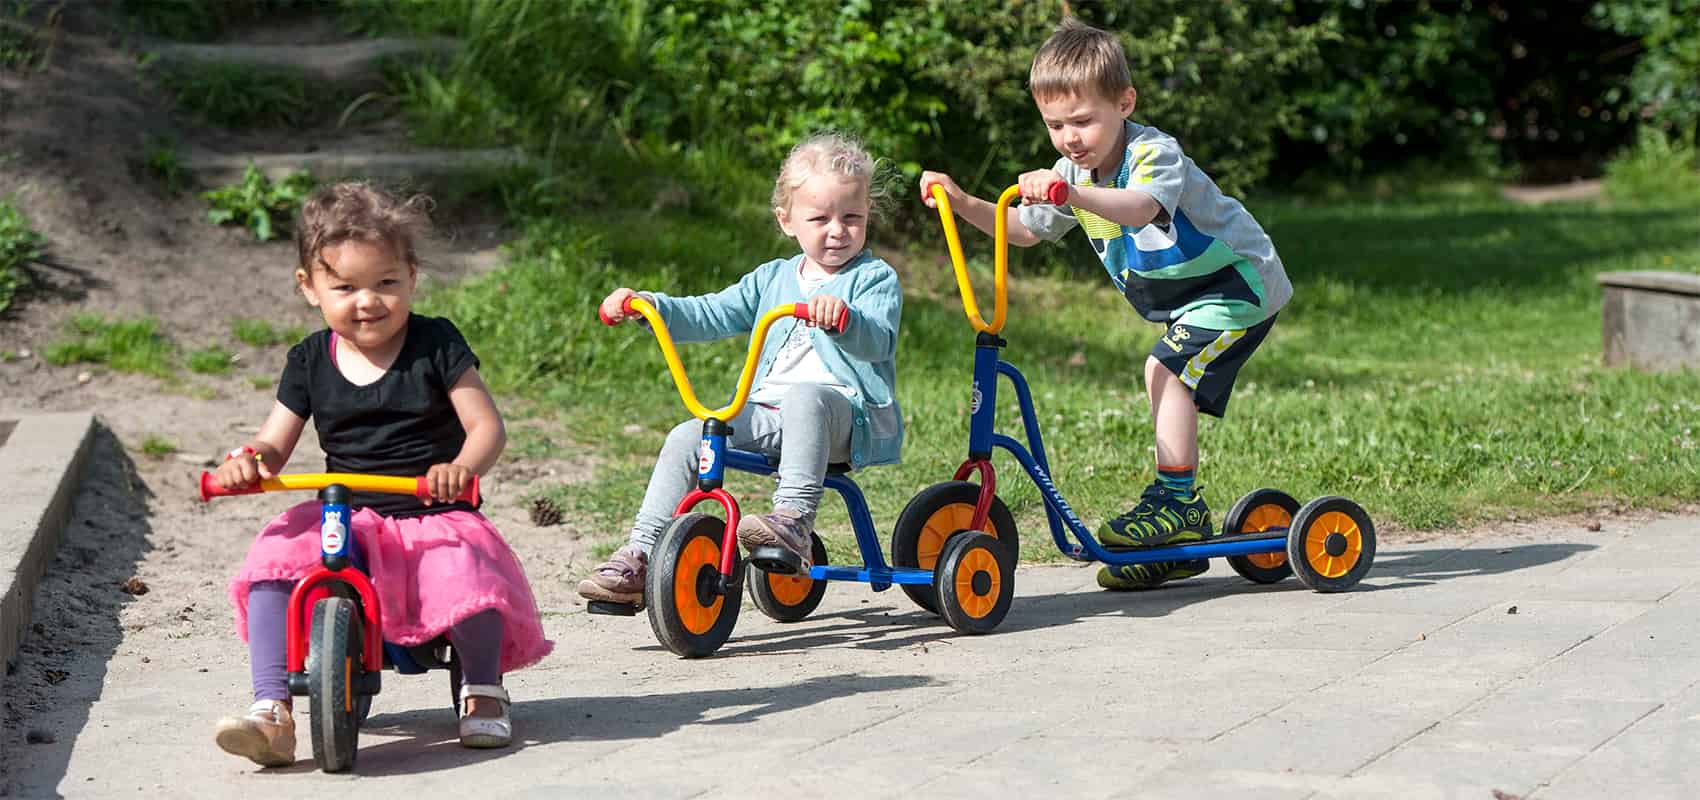 Juguetes sobre ruedas: bicicletas sin pedales, patinetes y triciclos